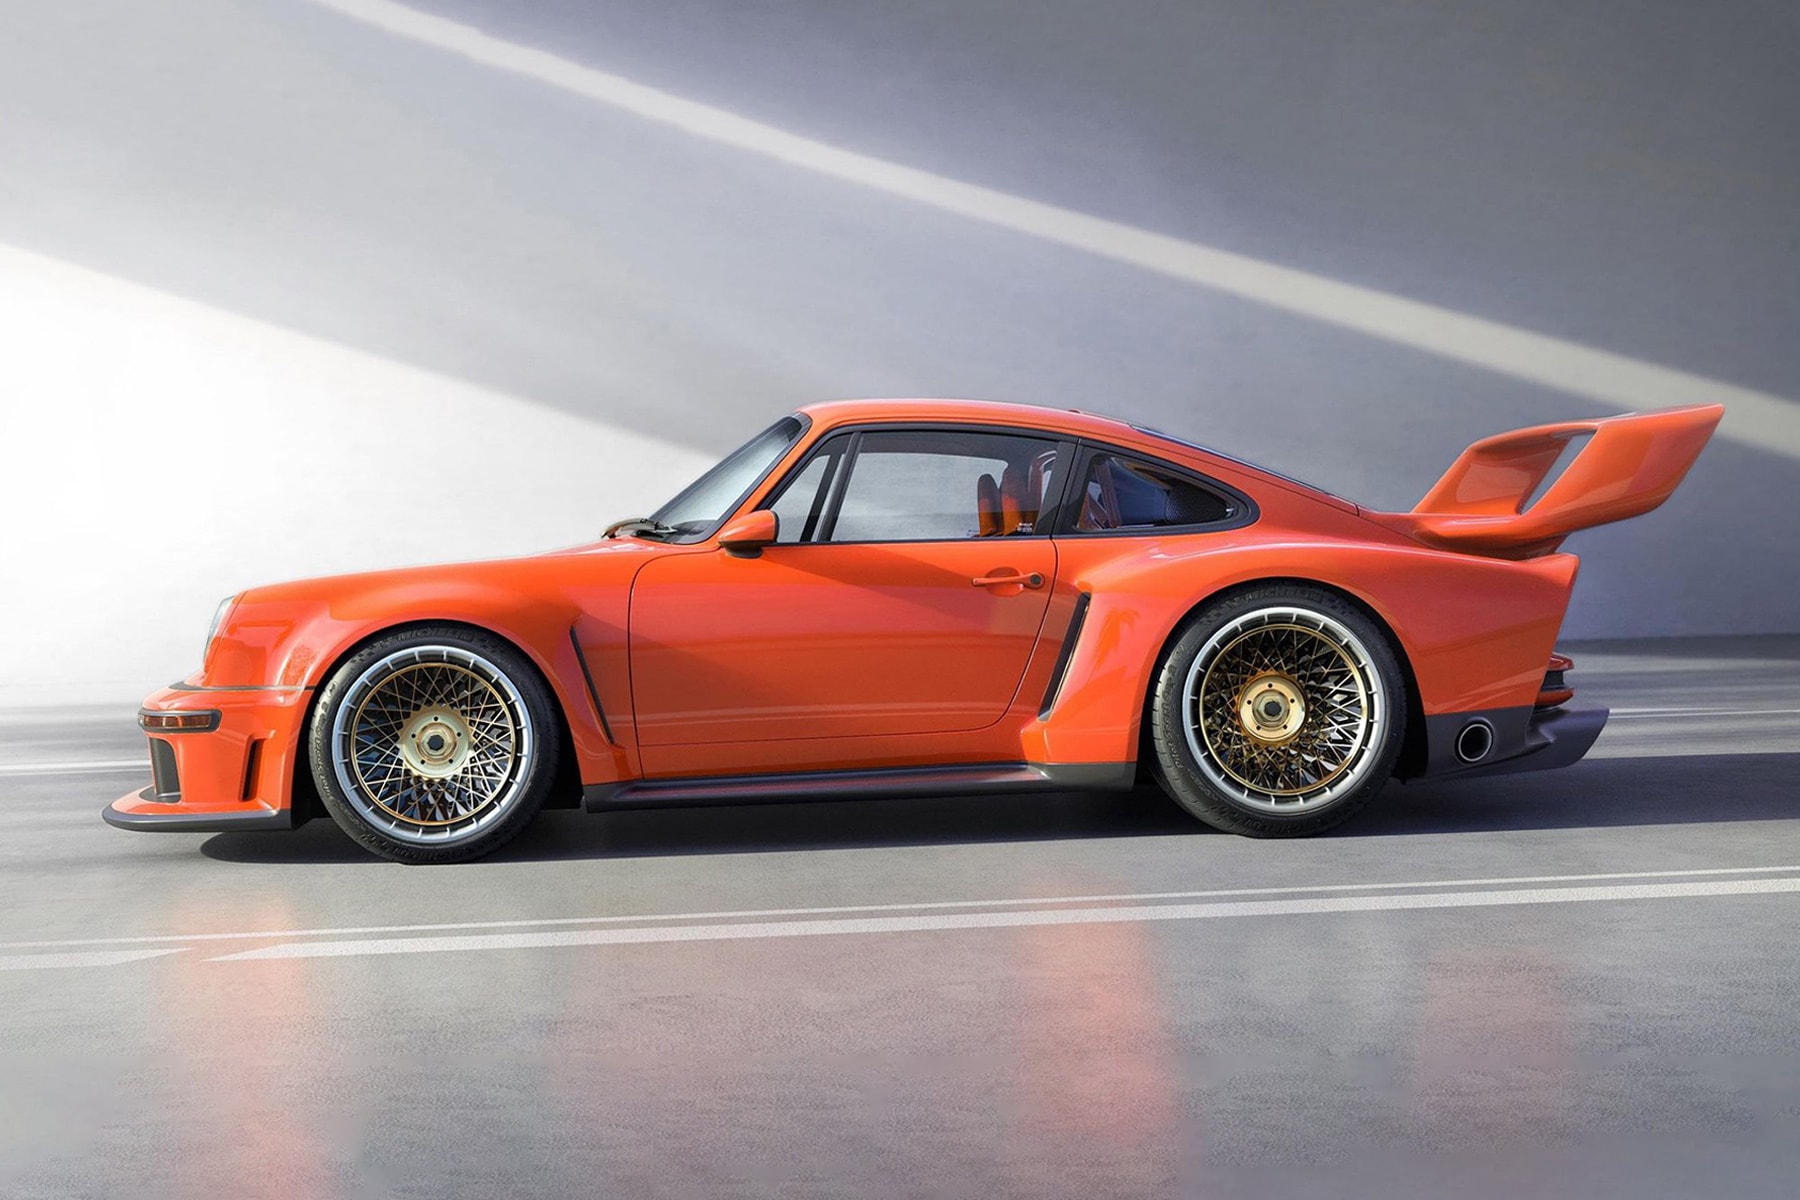 Singer 正式發表全新 Porsche 911 改裝車型「DLS-T」